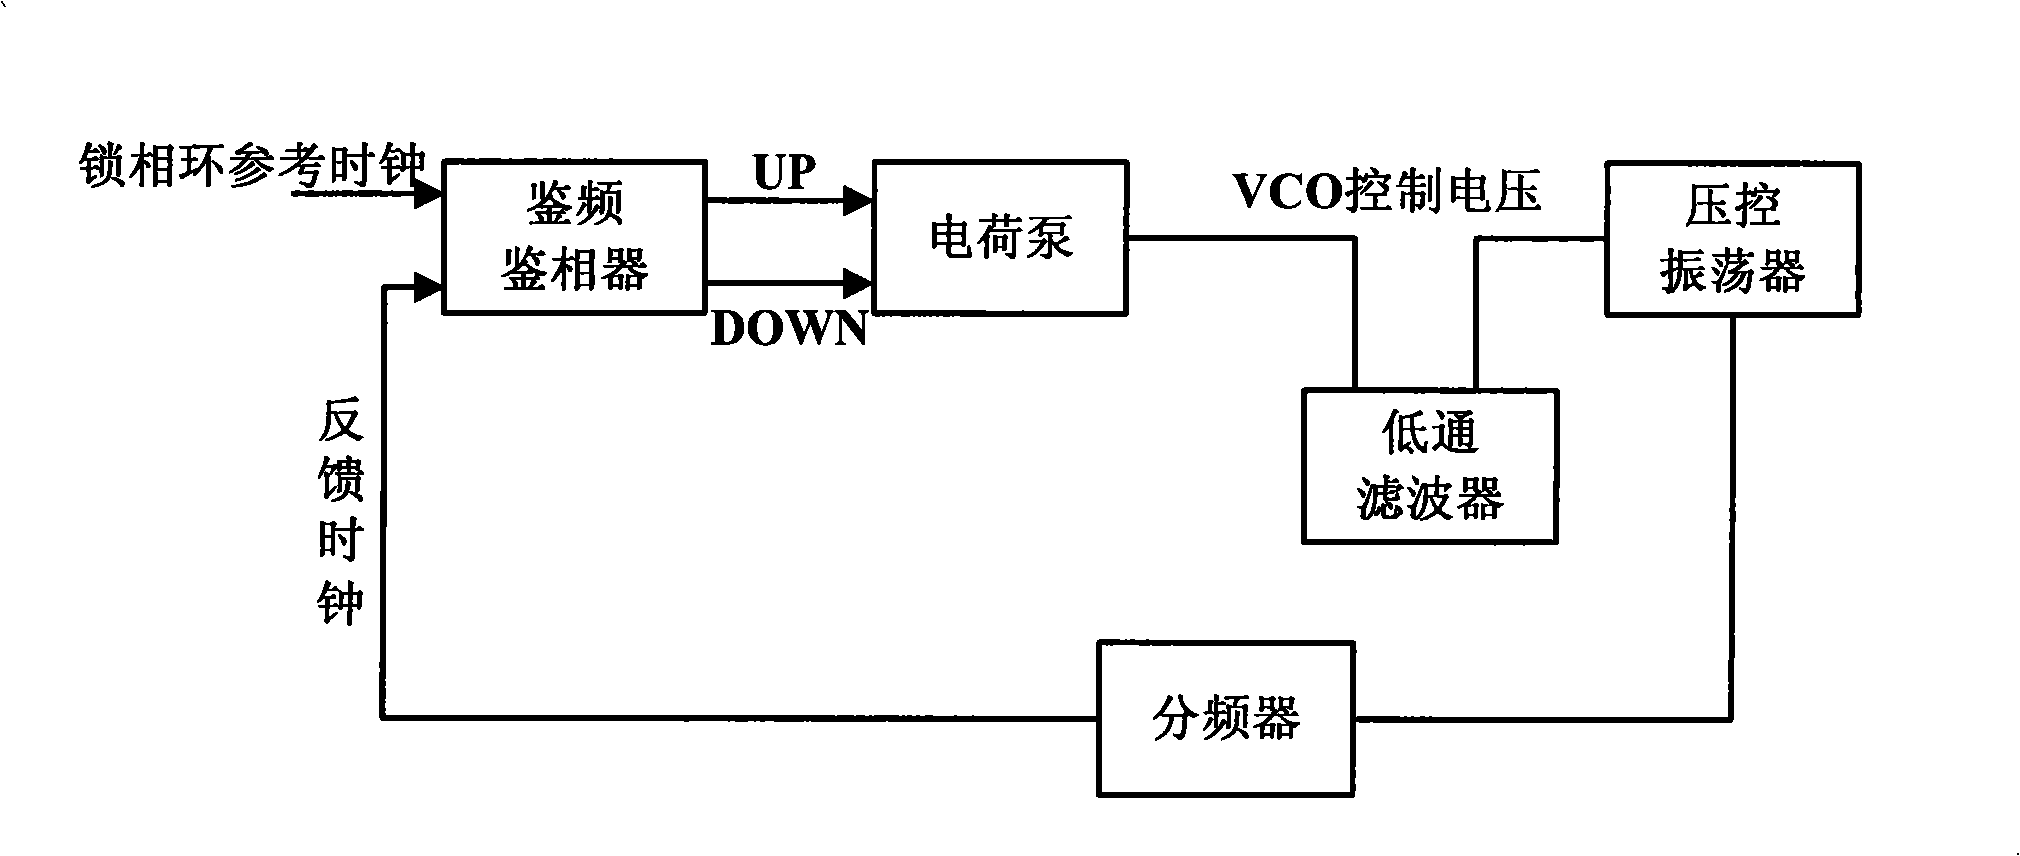 Loop filter circuit for charge pump phase-locked loop